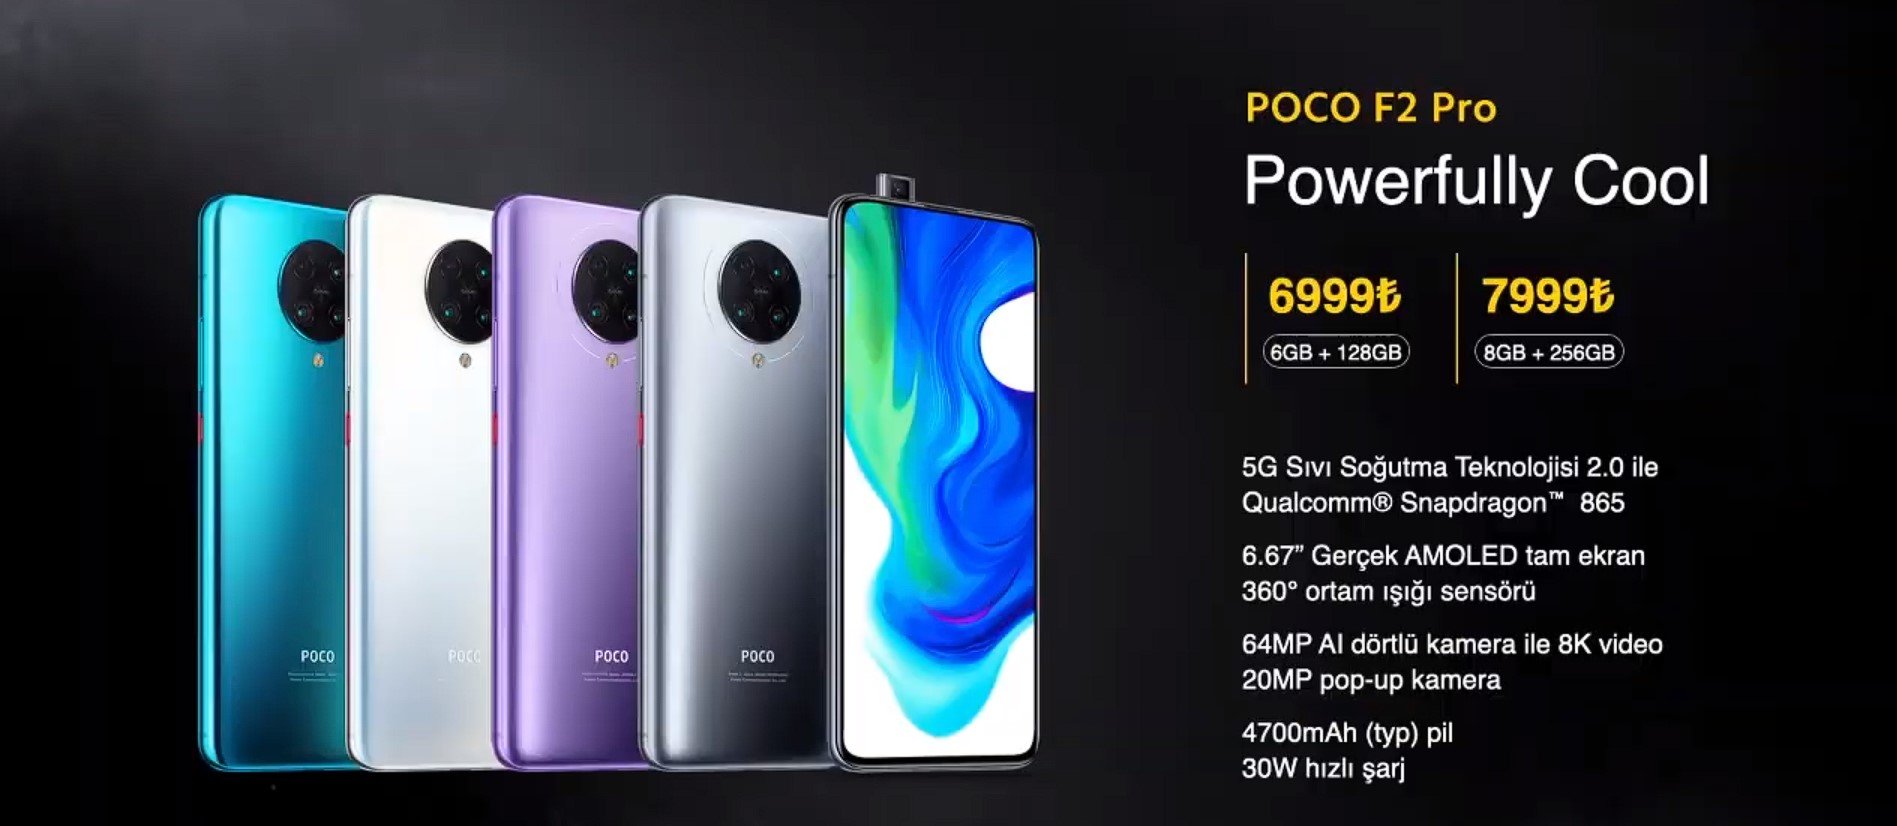 POCO F2 Pro fiyatı 